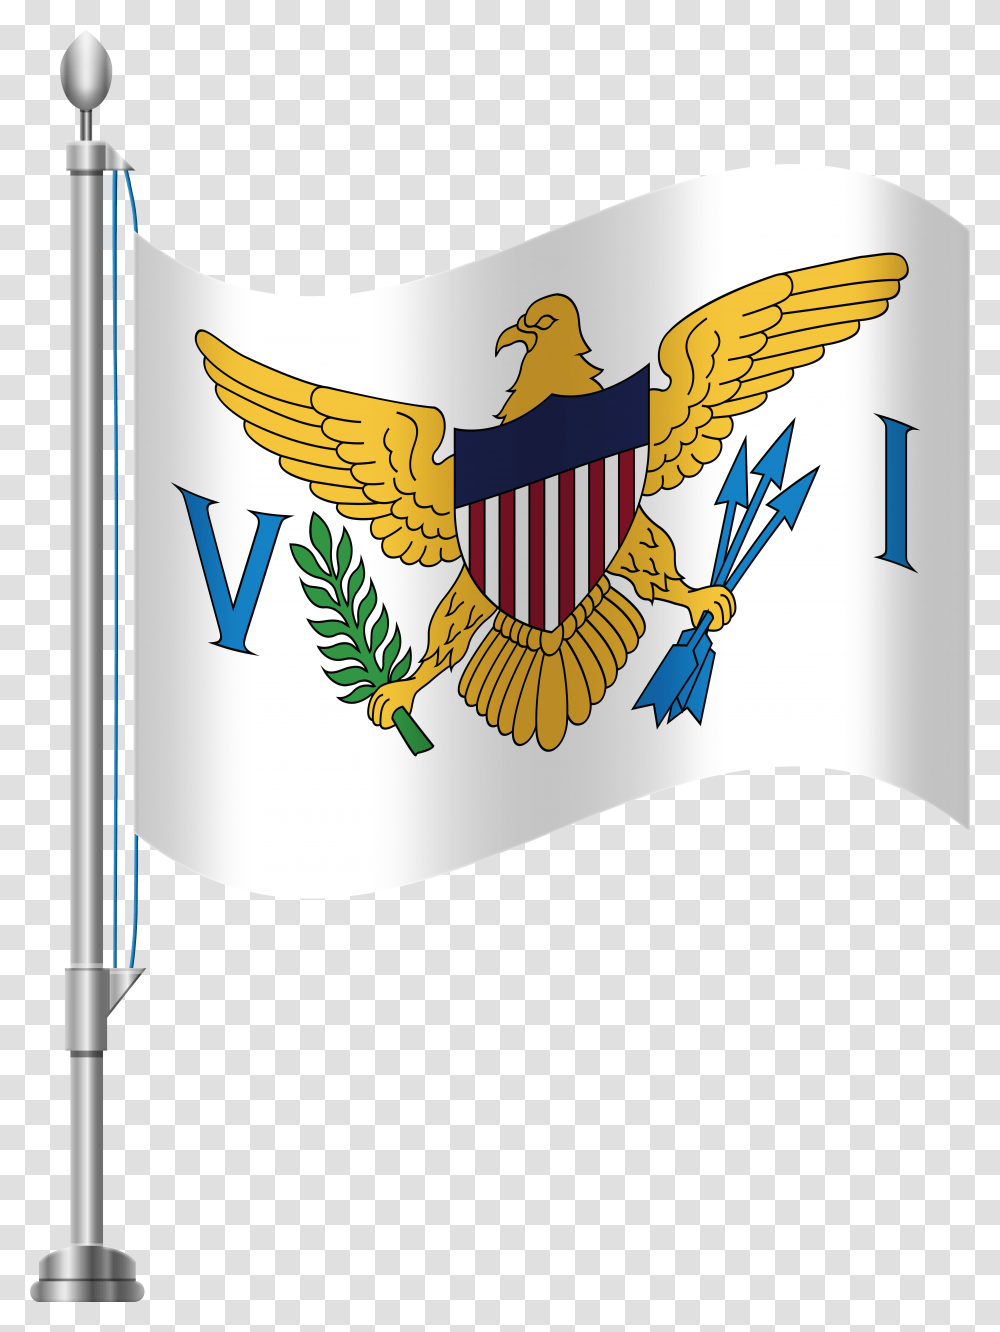 Virgin Islands Flag Clip Art United States Virgin Islands Flag, Emblem, Logo Transparent Png